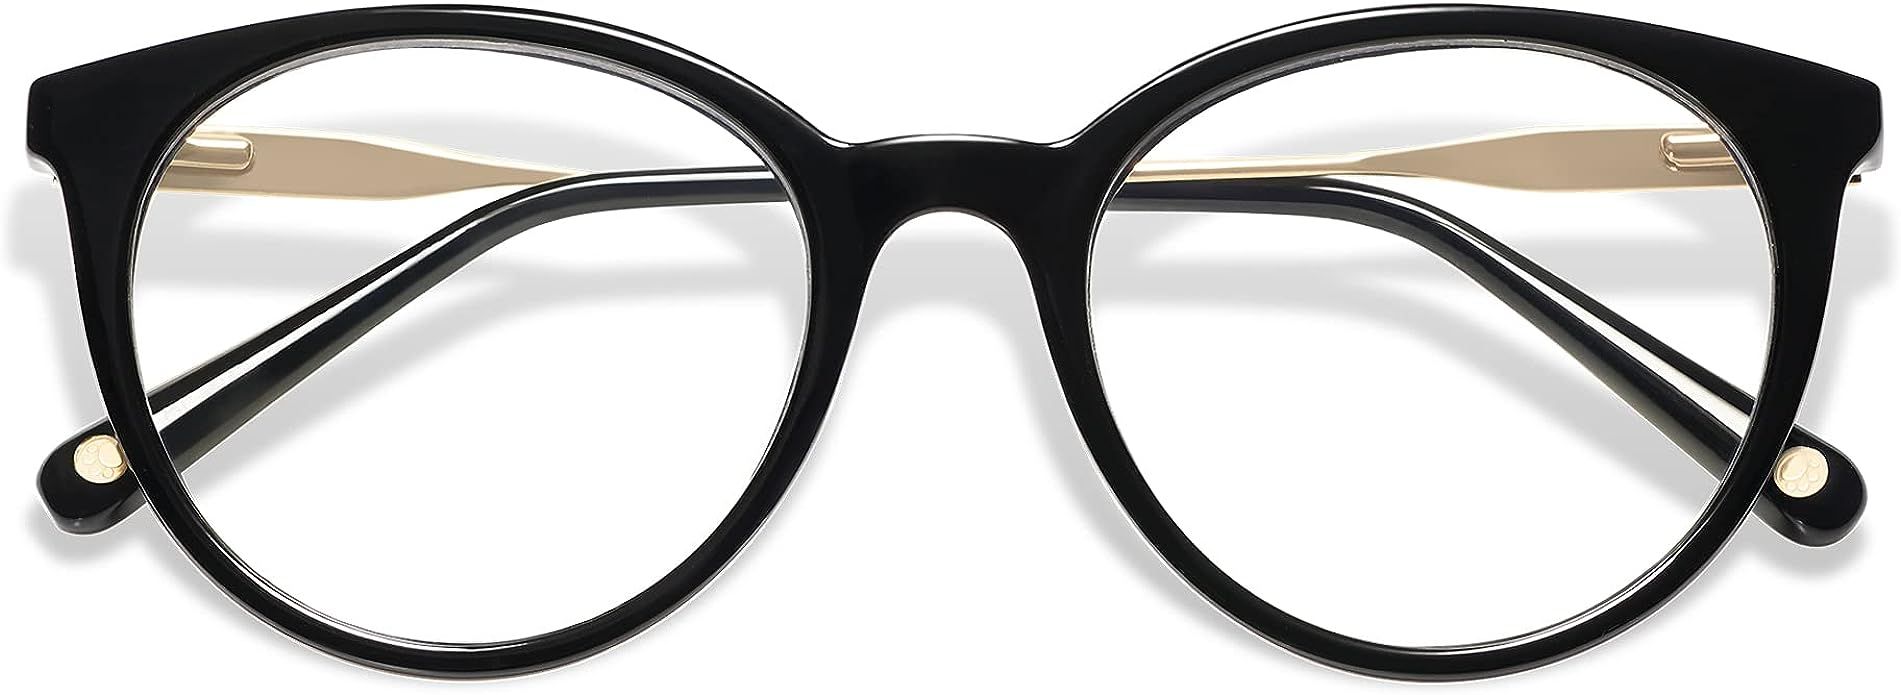 AMOMOMA Retro Round Reading Glasses for Women Cute Stylish Blue Light Blocking Readers AM6055 | Amazon (US)